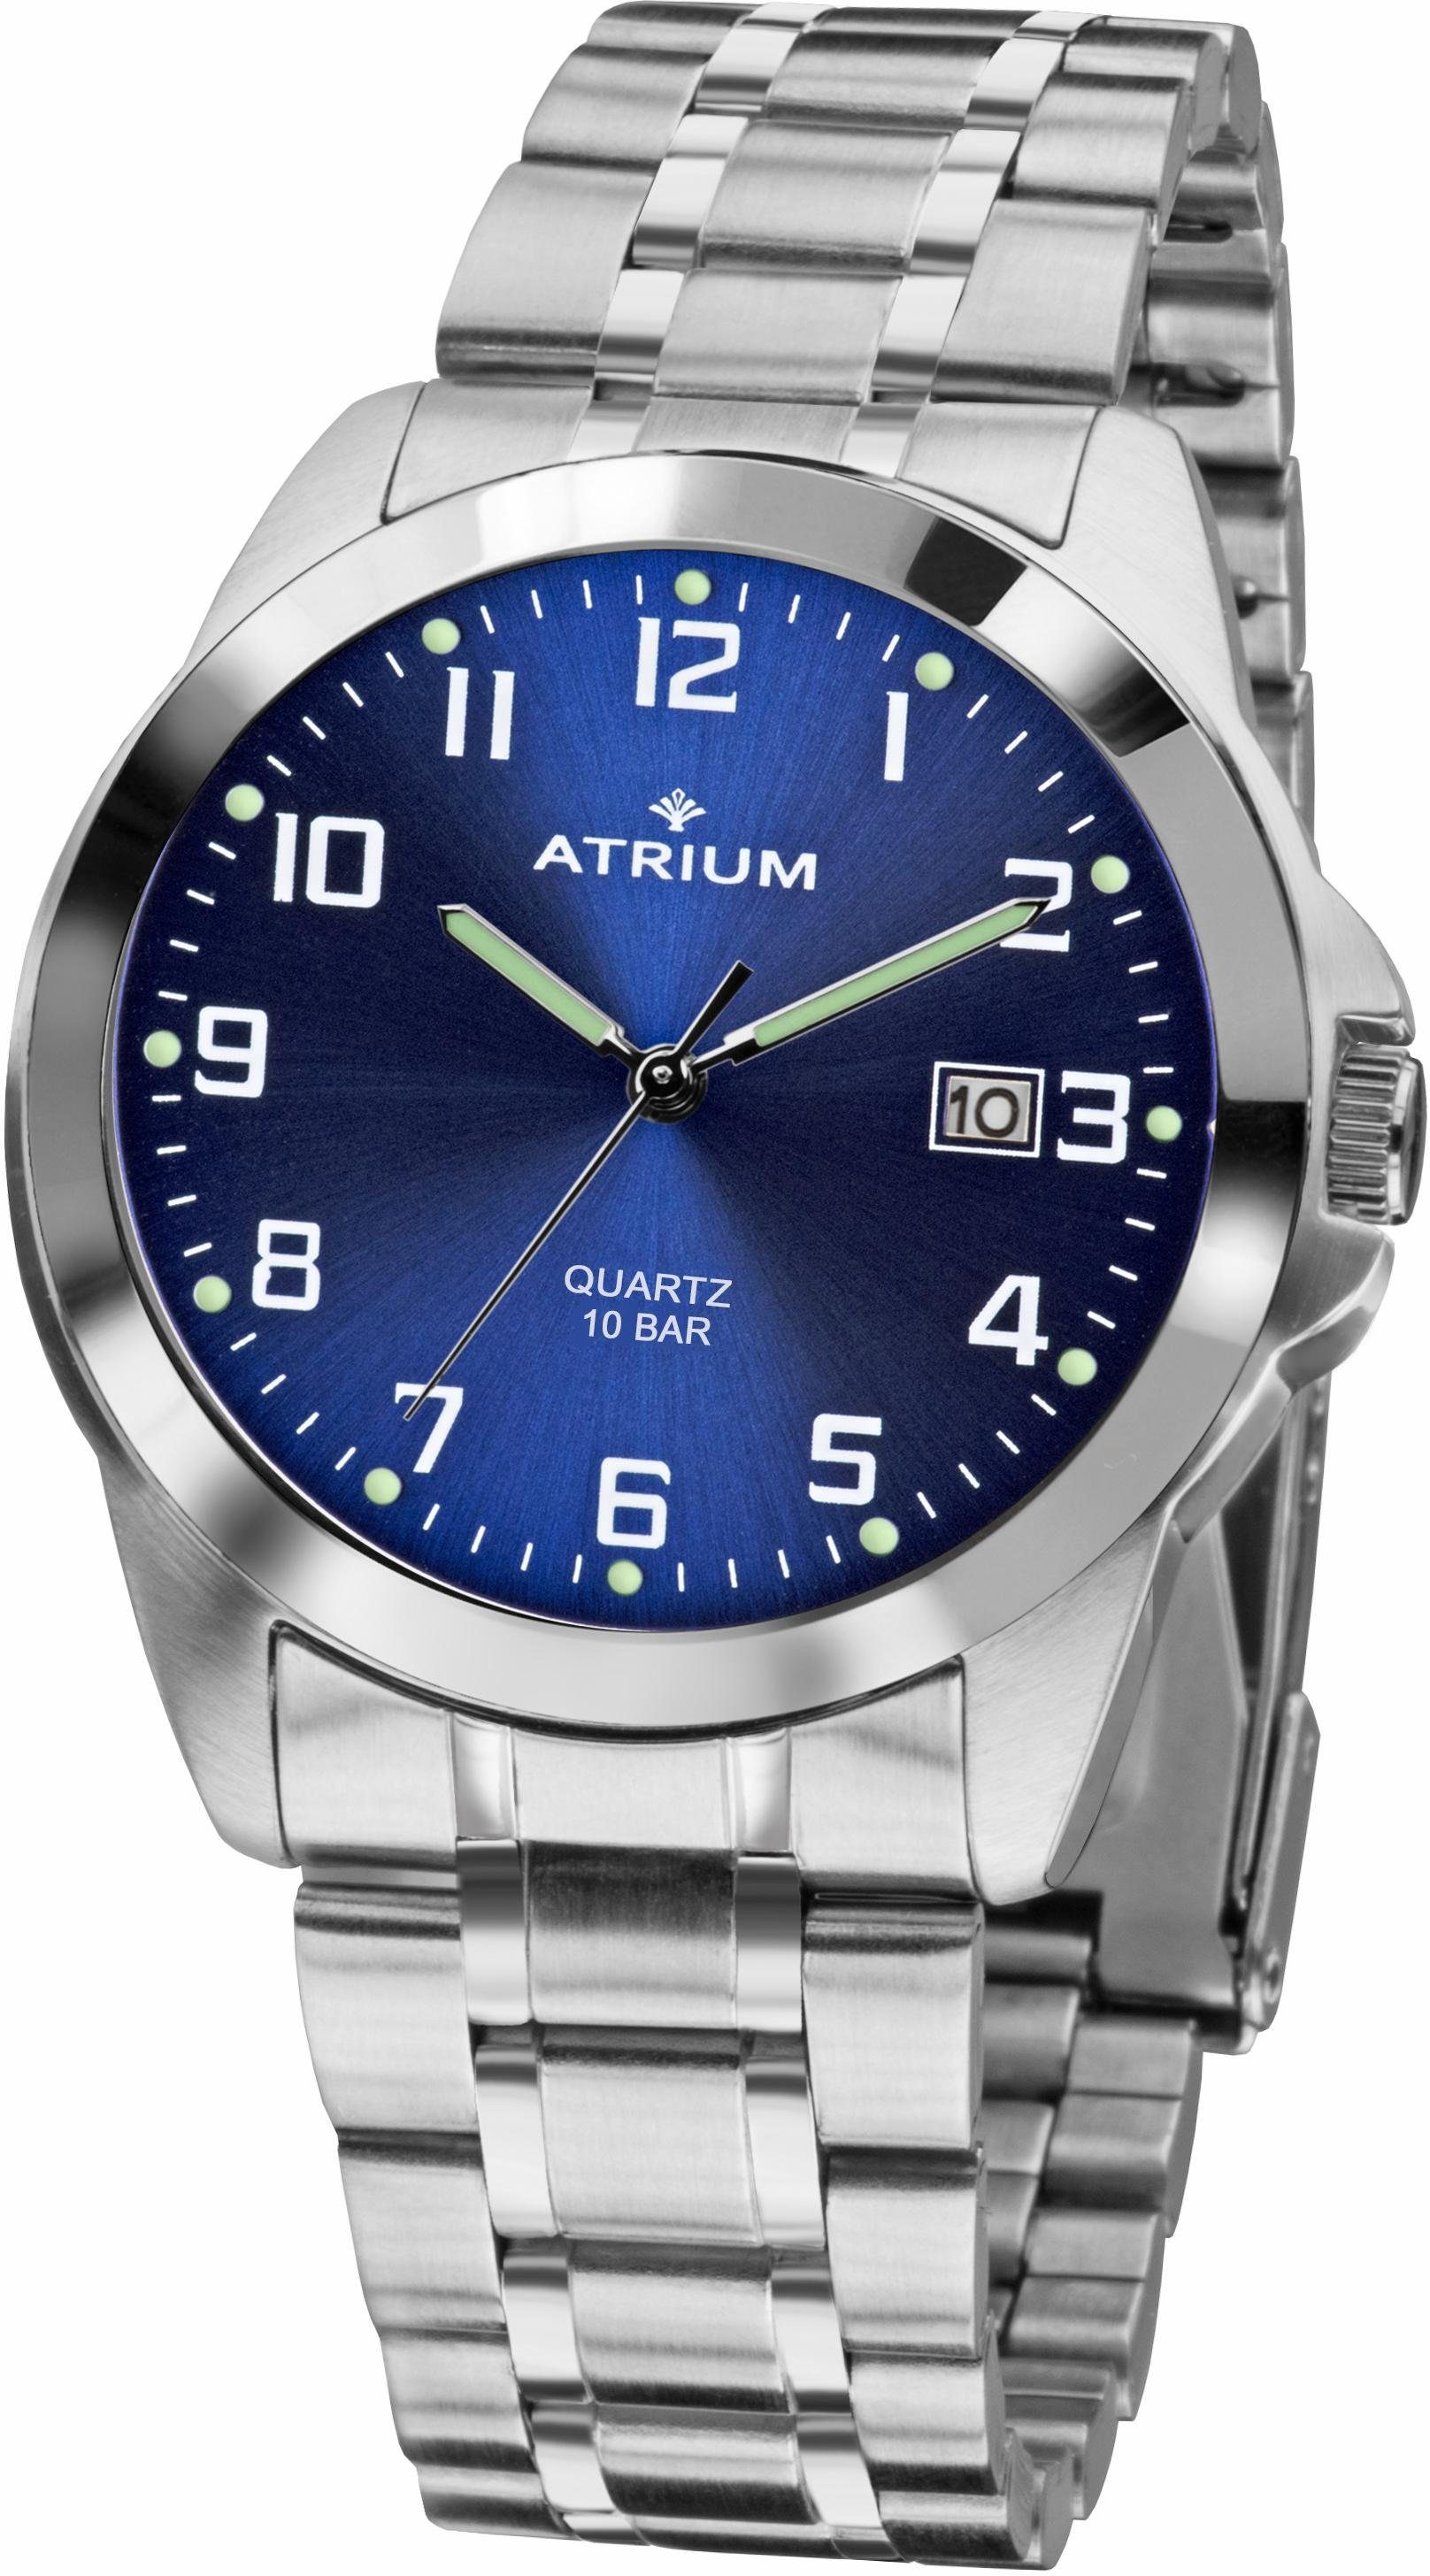 Atrium Quarzuhr A16-35, Armbanduhr, Herrenuhr, Datum, Leuchtzeiger